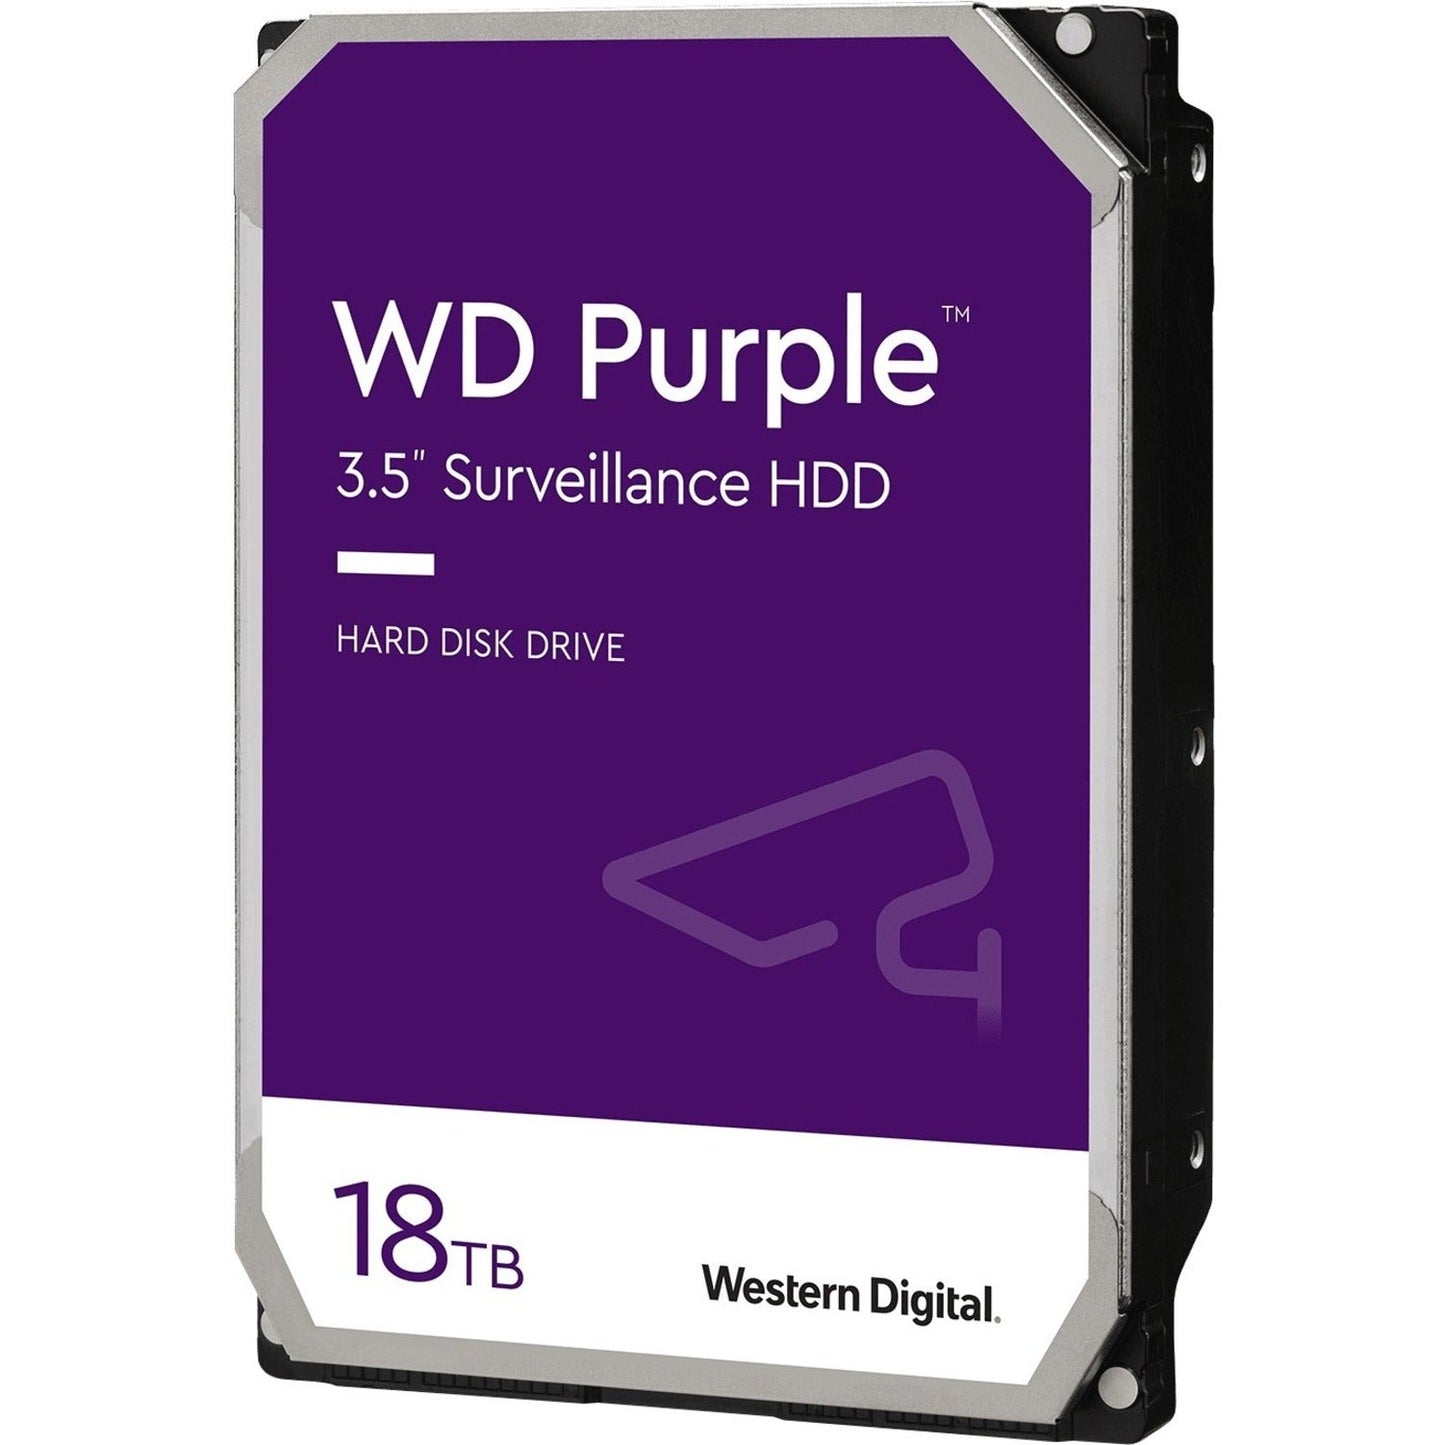 Western Digital Purple WD180PURZ 18 TB Hard Drive - 3.5" Internal - SATA (SATA/600)